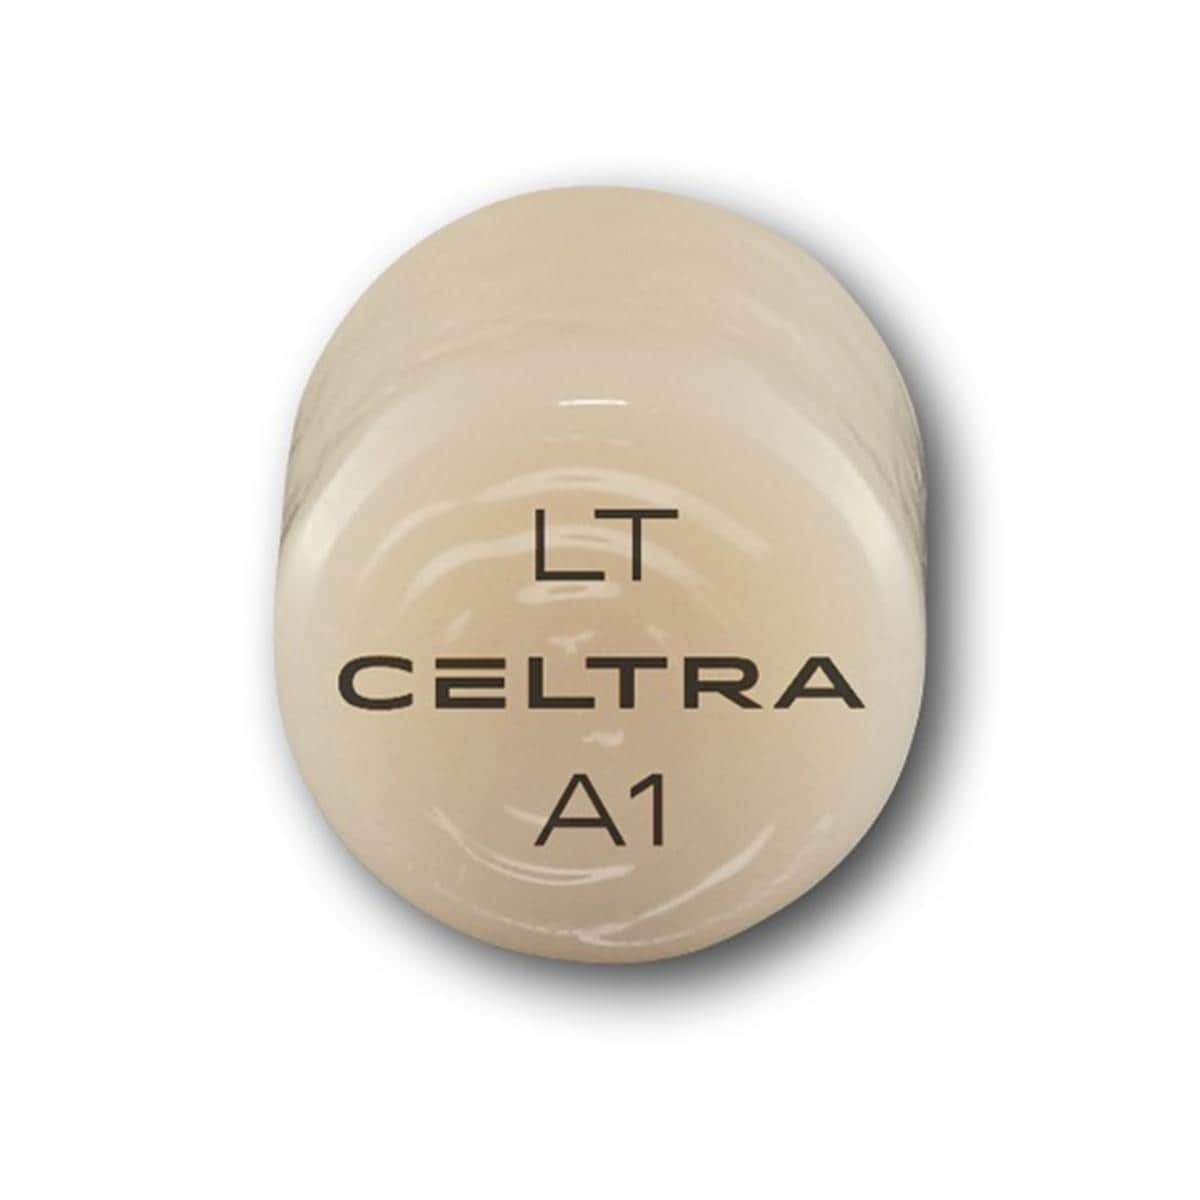 CELTRA® Press LT - A1, Packung 5 x 3 g